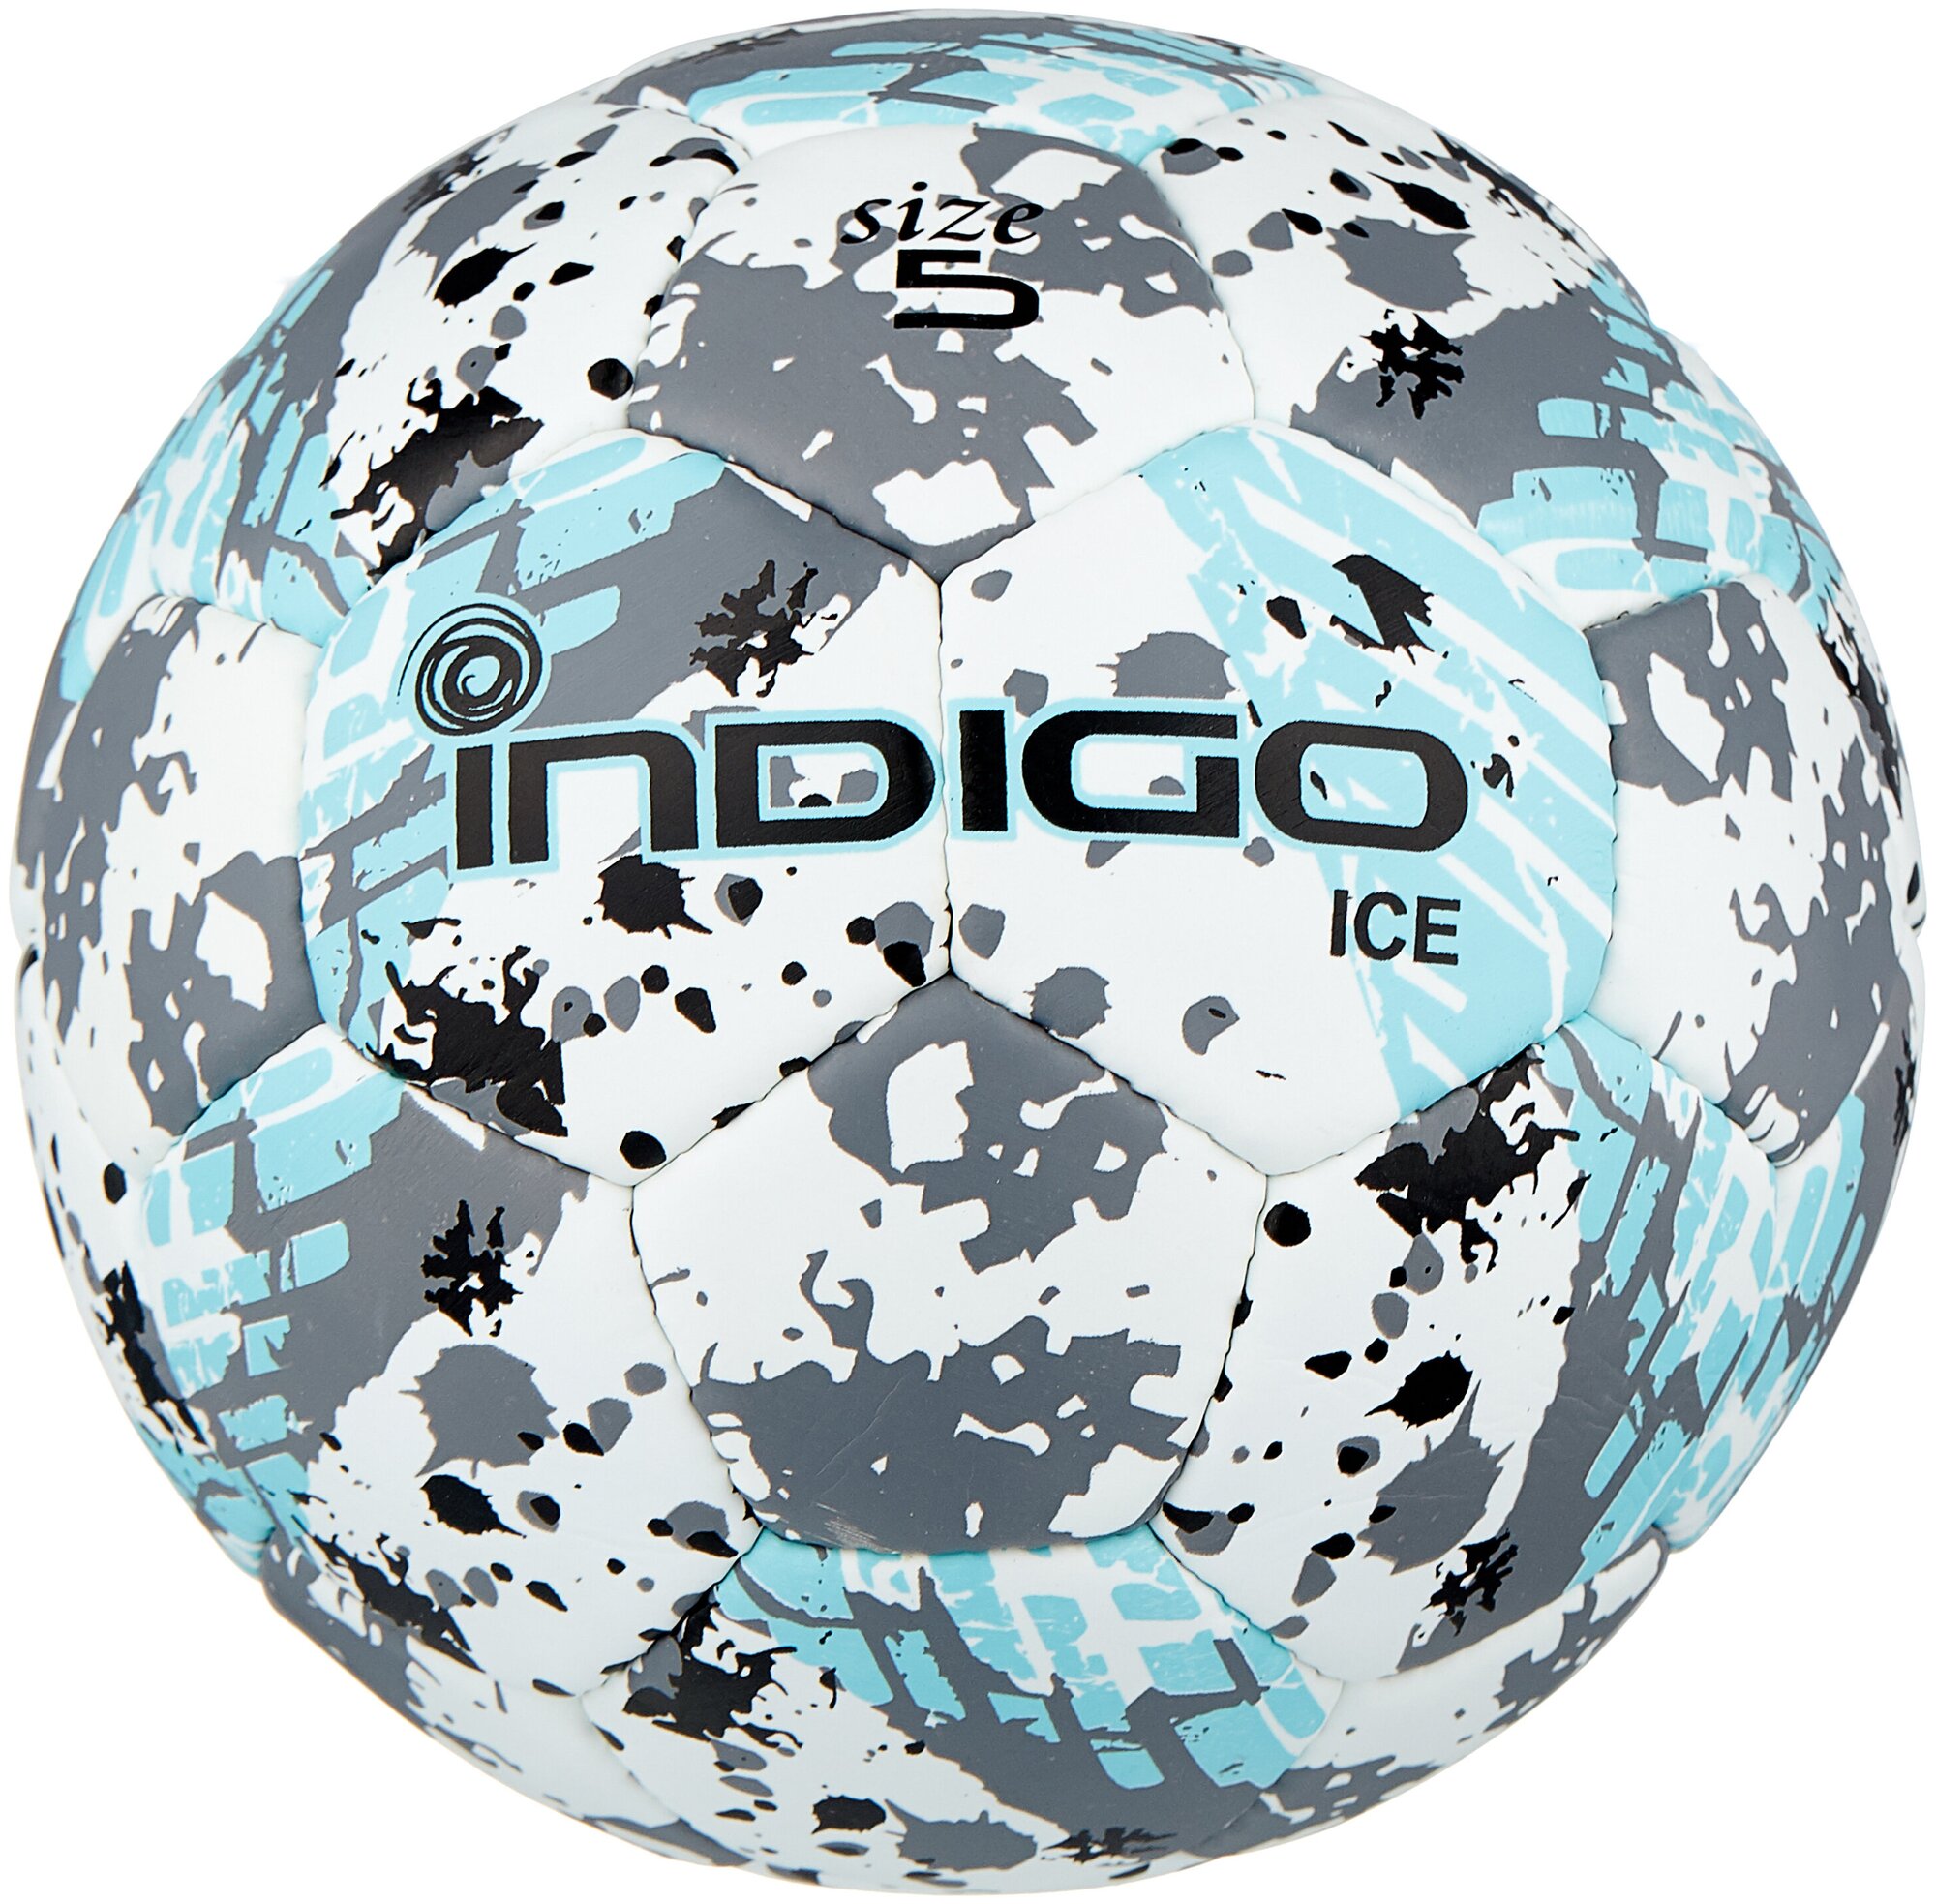 Мяч футбольный №5 IN027 INDIGO ICE тренировочный (PU) Бело-голубо-серый